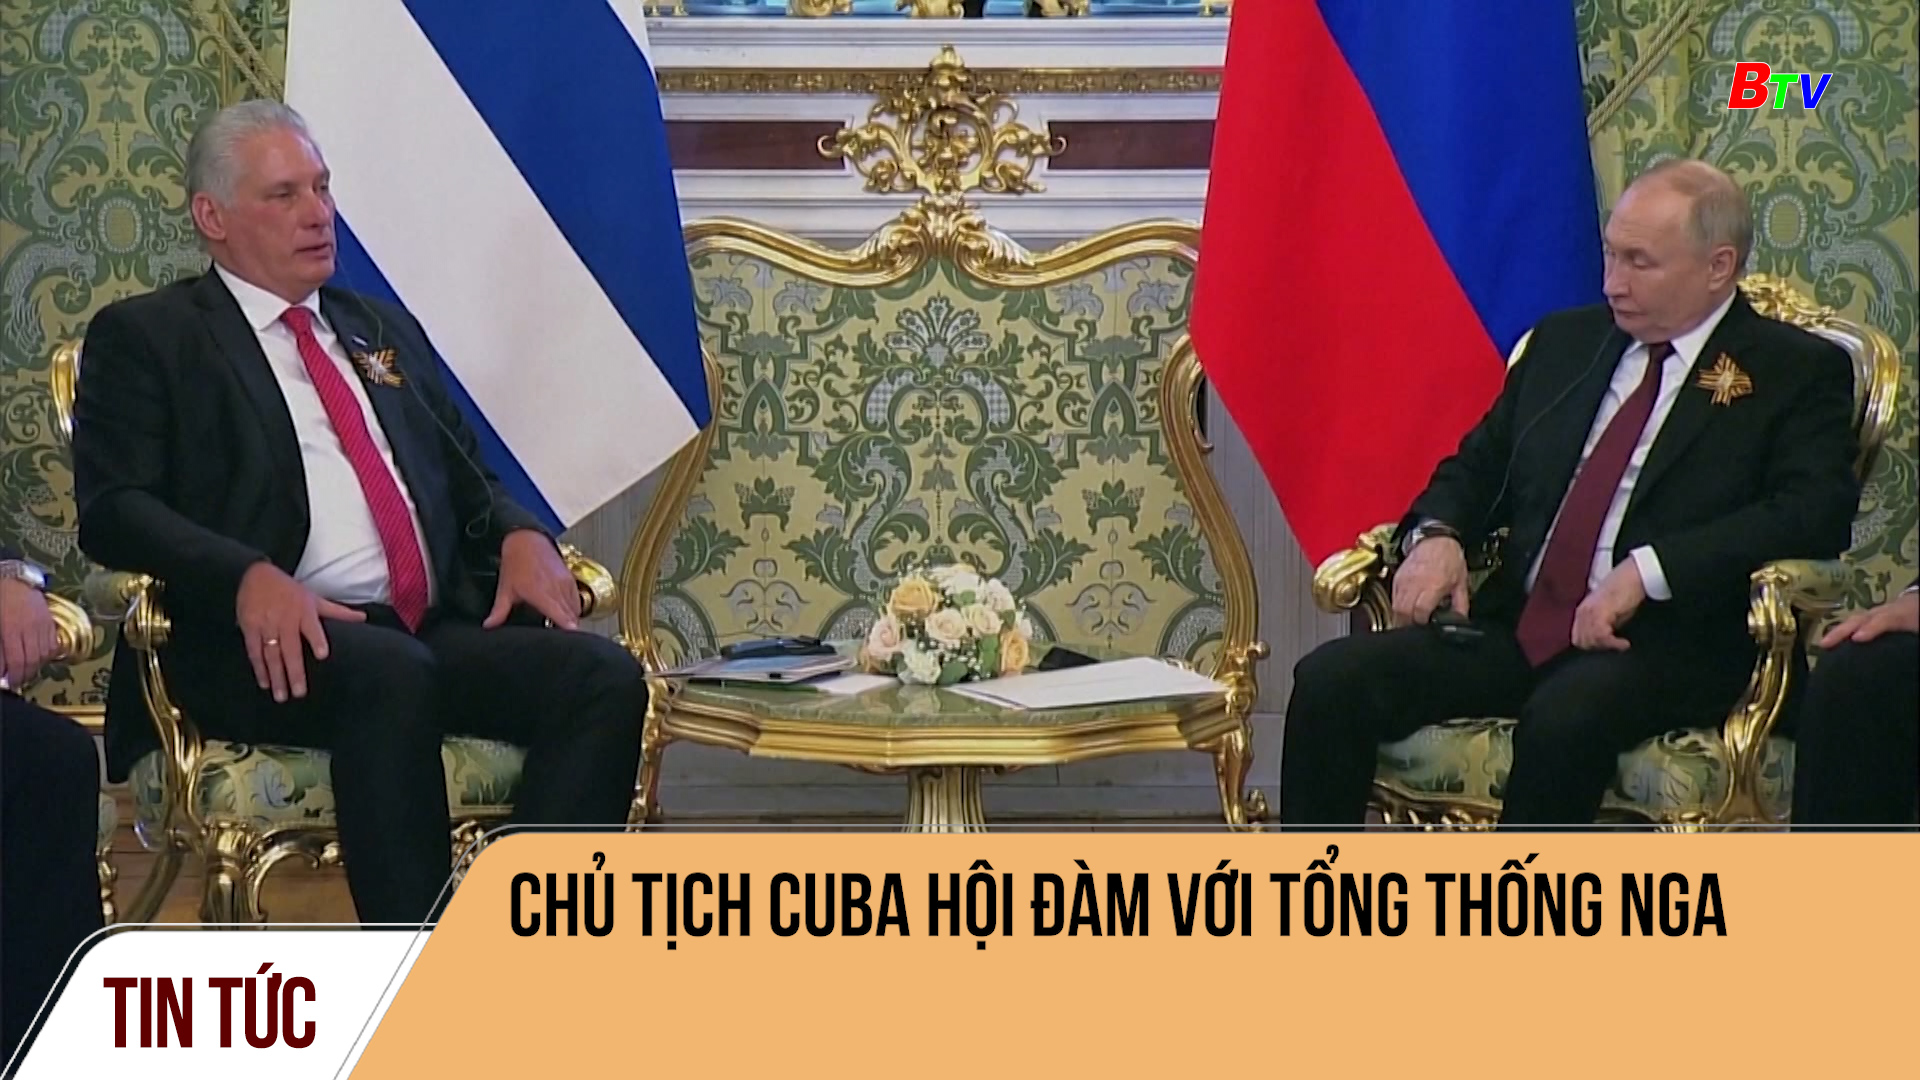 Chủ tịch Cuba hội đàm với tổng thống Nga